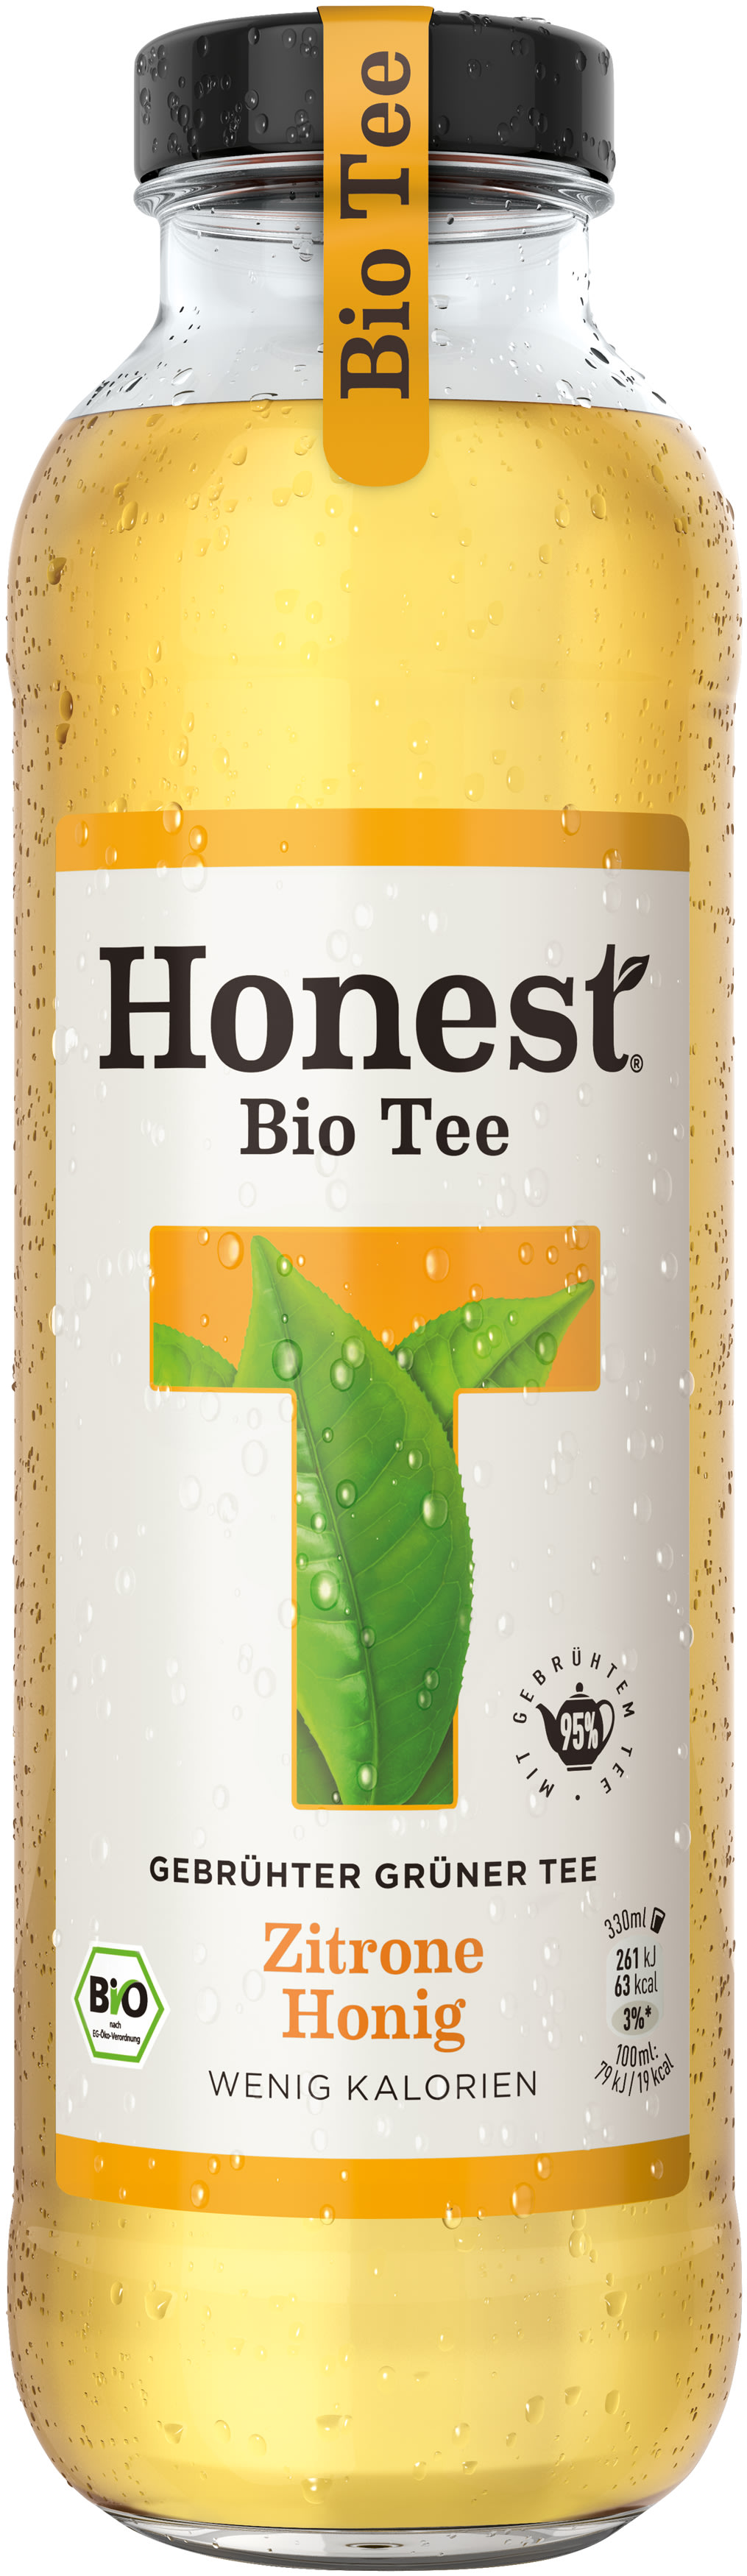 Honest Bio Tee Zitrone Honig 0,33 l Glas Mehrweg - Ihr zuverlässiger ...